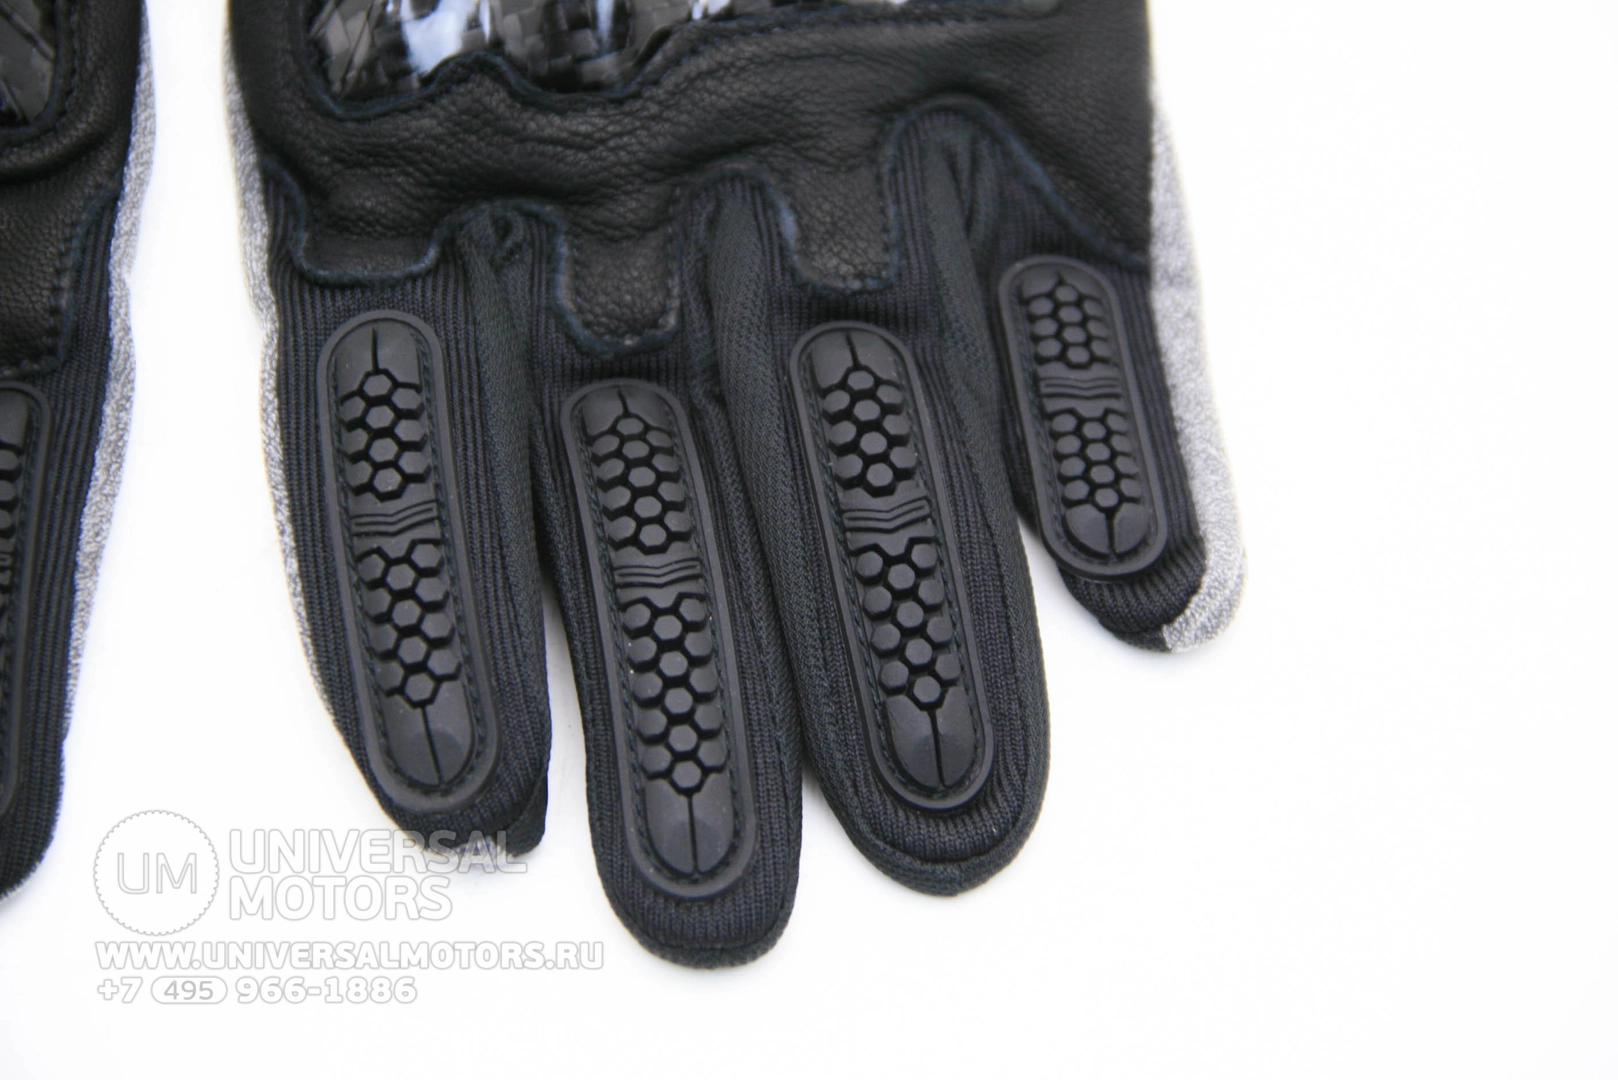 Мотоперчатки Masontex M30 Carbon (Черный), 11121930722643070109